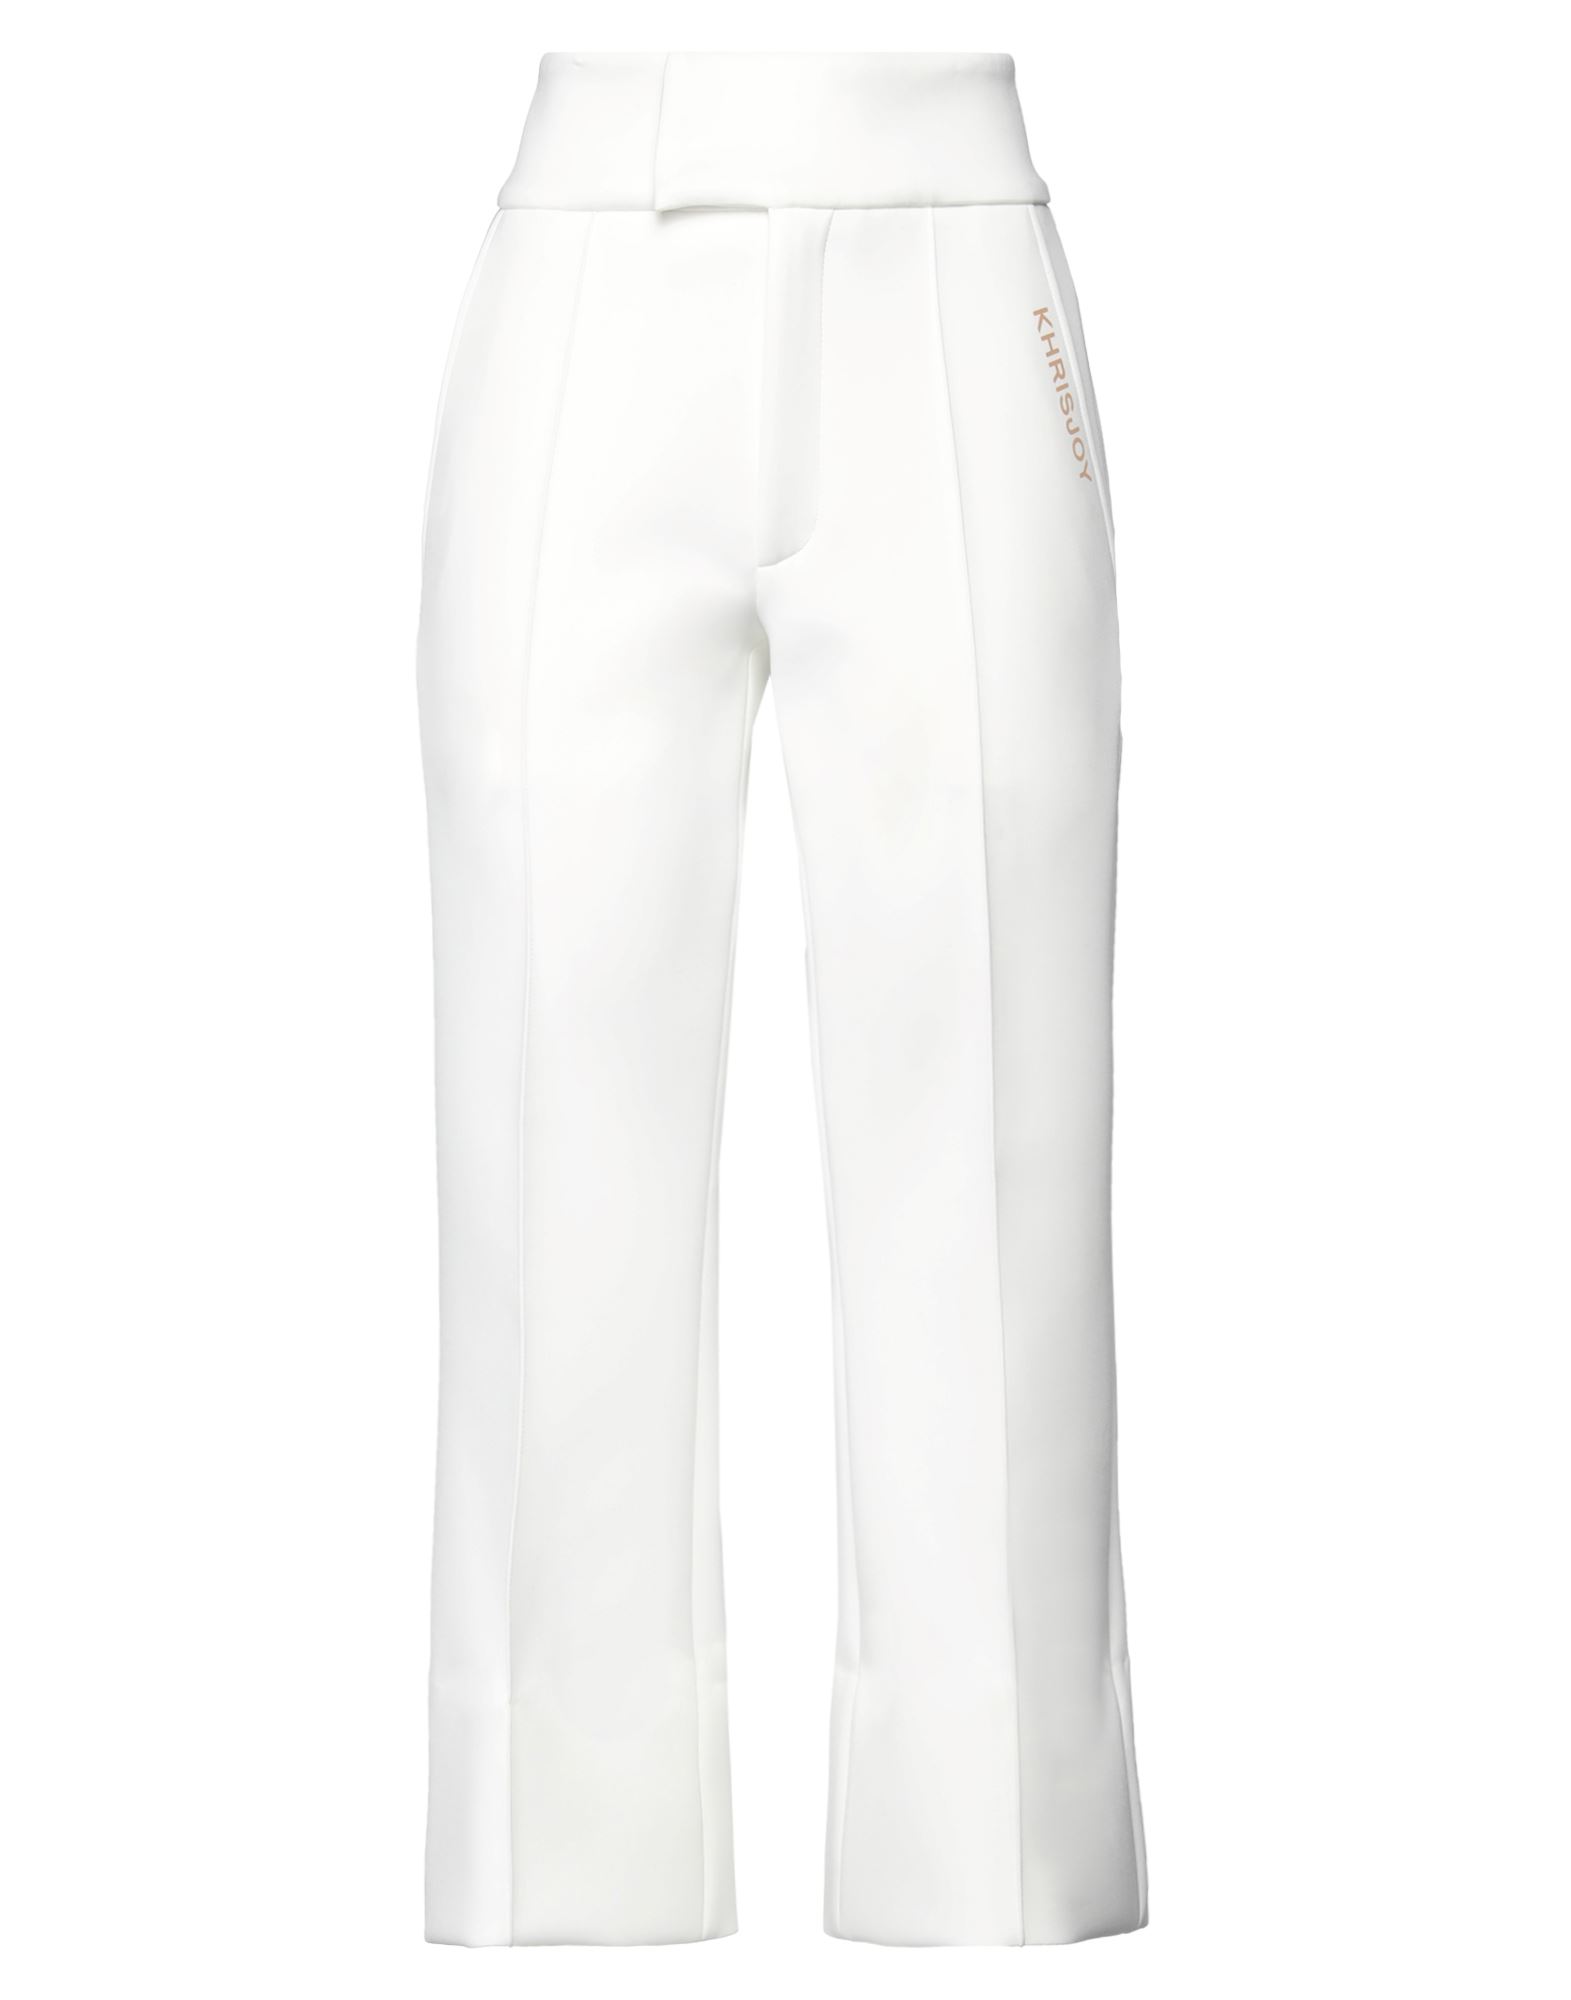 Shop Khrisjoy Woman Pants White Size M Polyester, Elastane